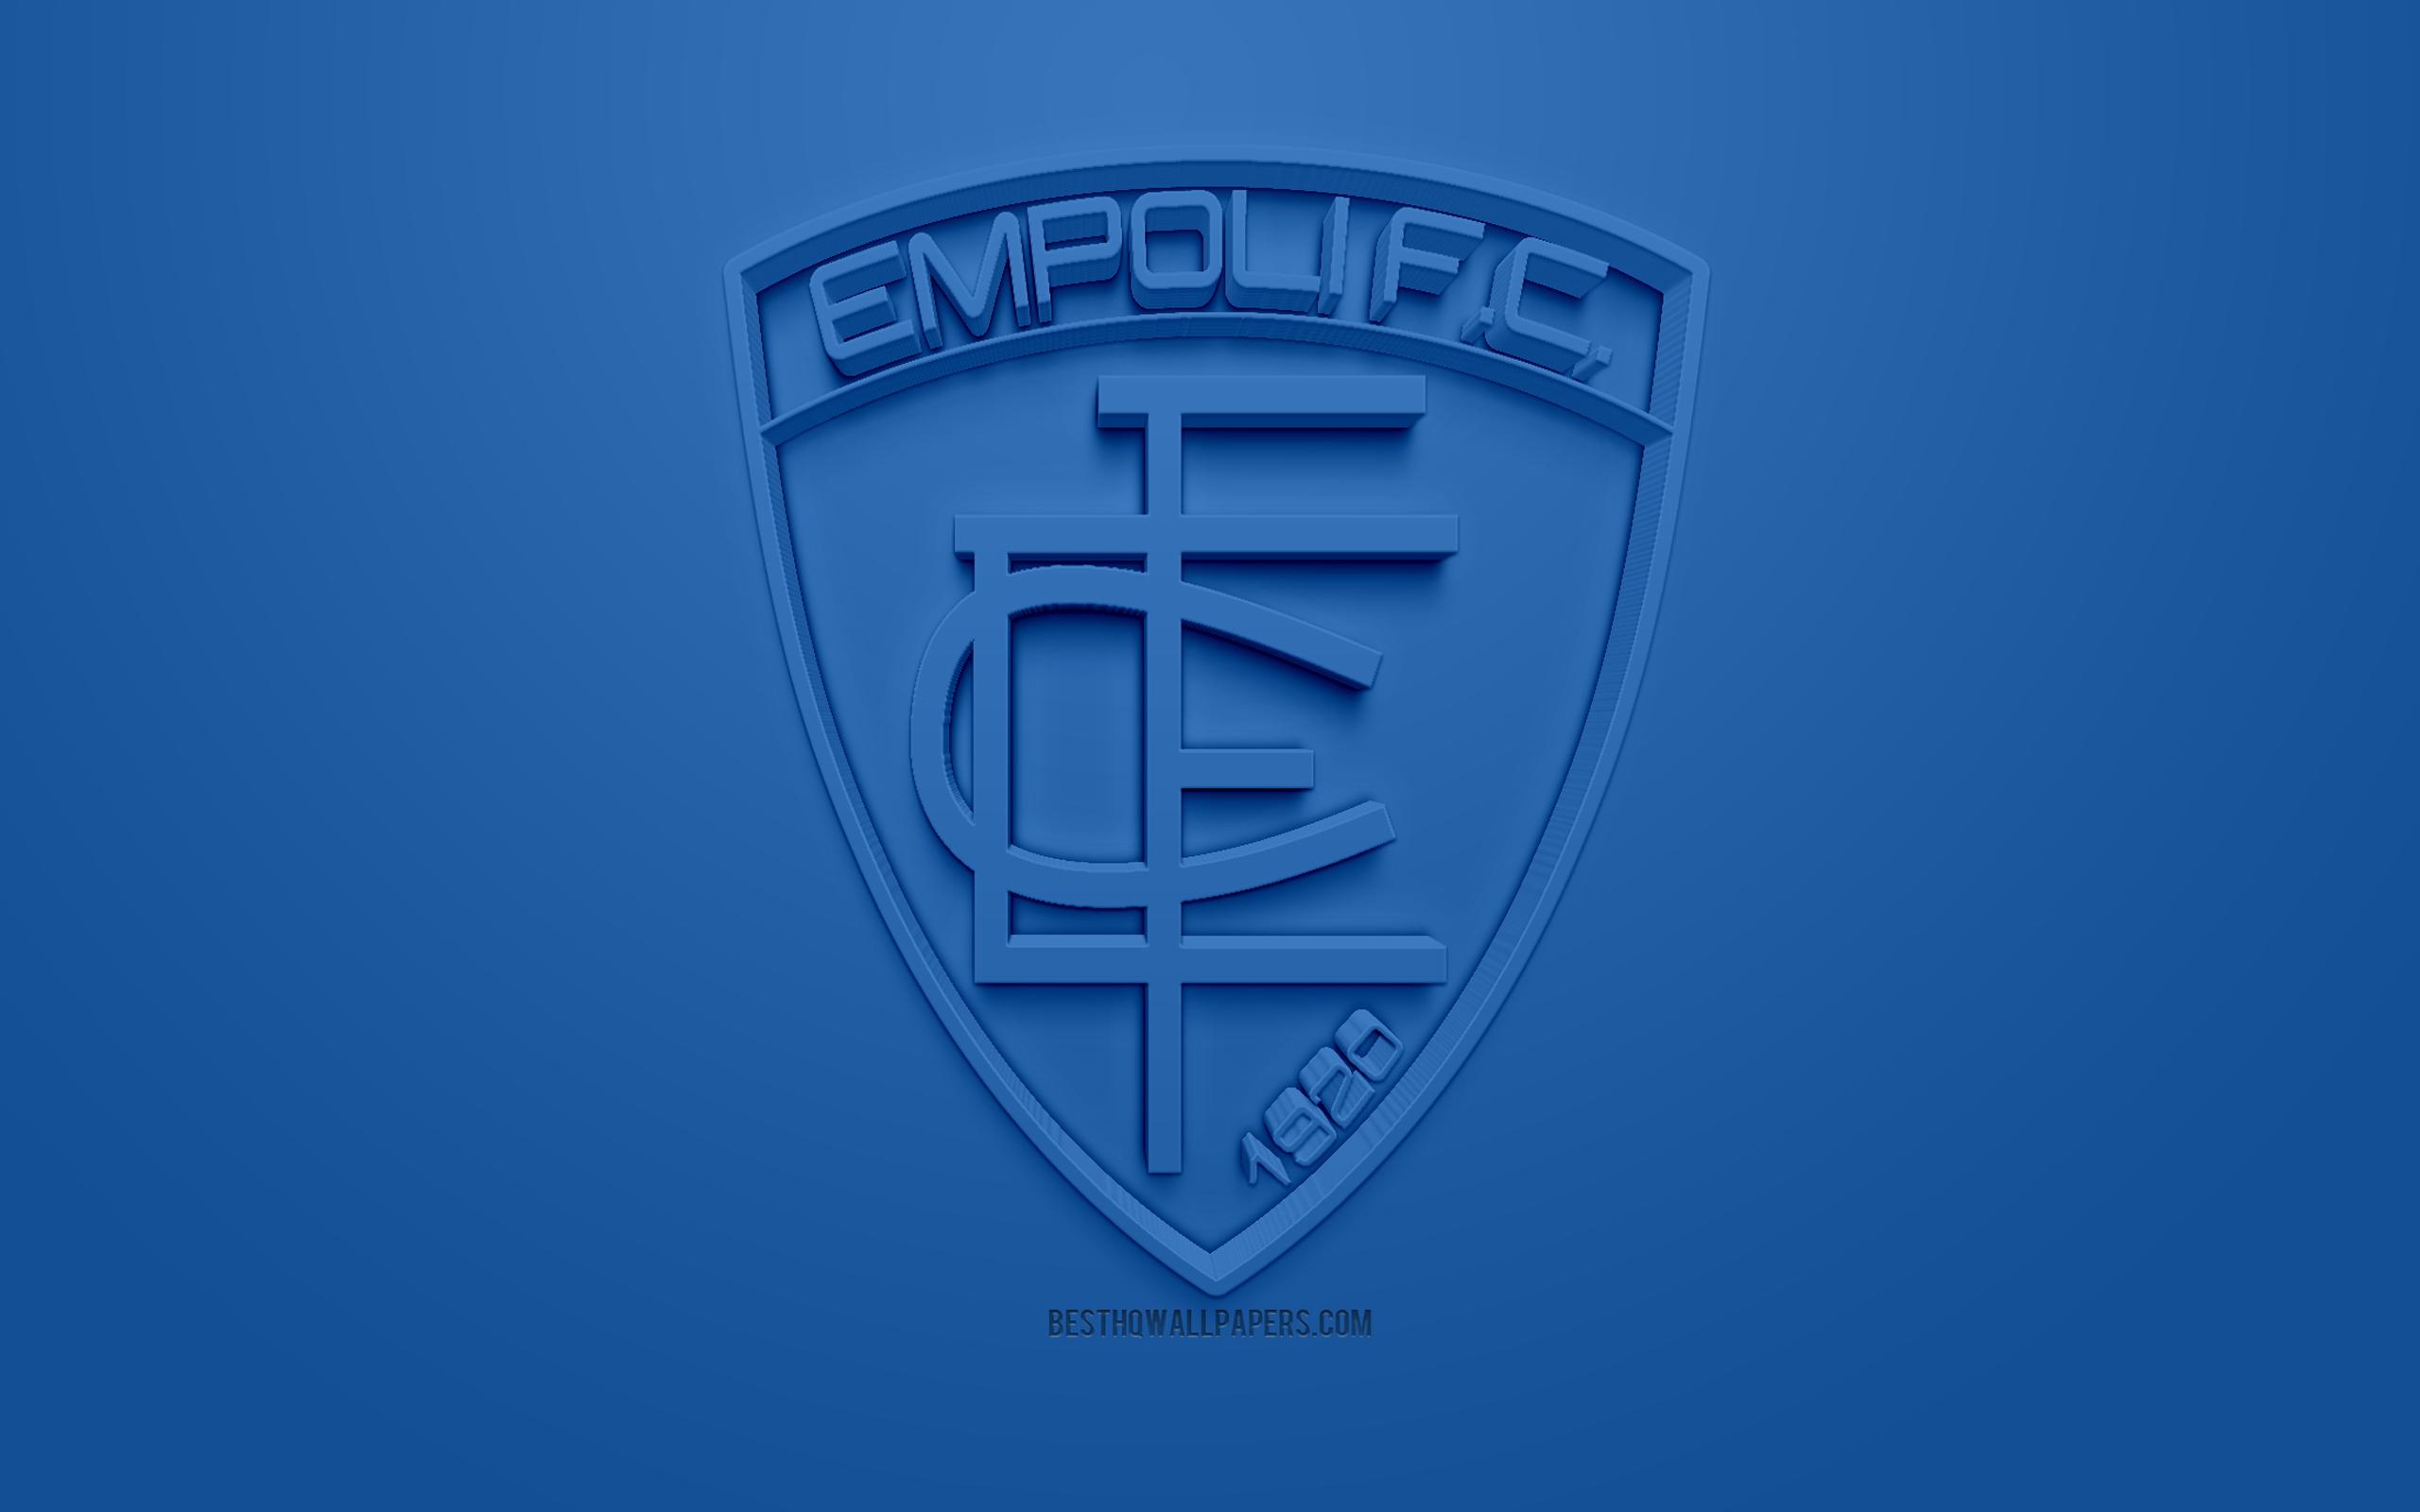 Download imagens Empoli FC, criativo logo 3D, fundo azul, 3D emblema